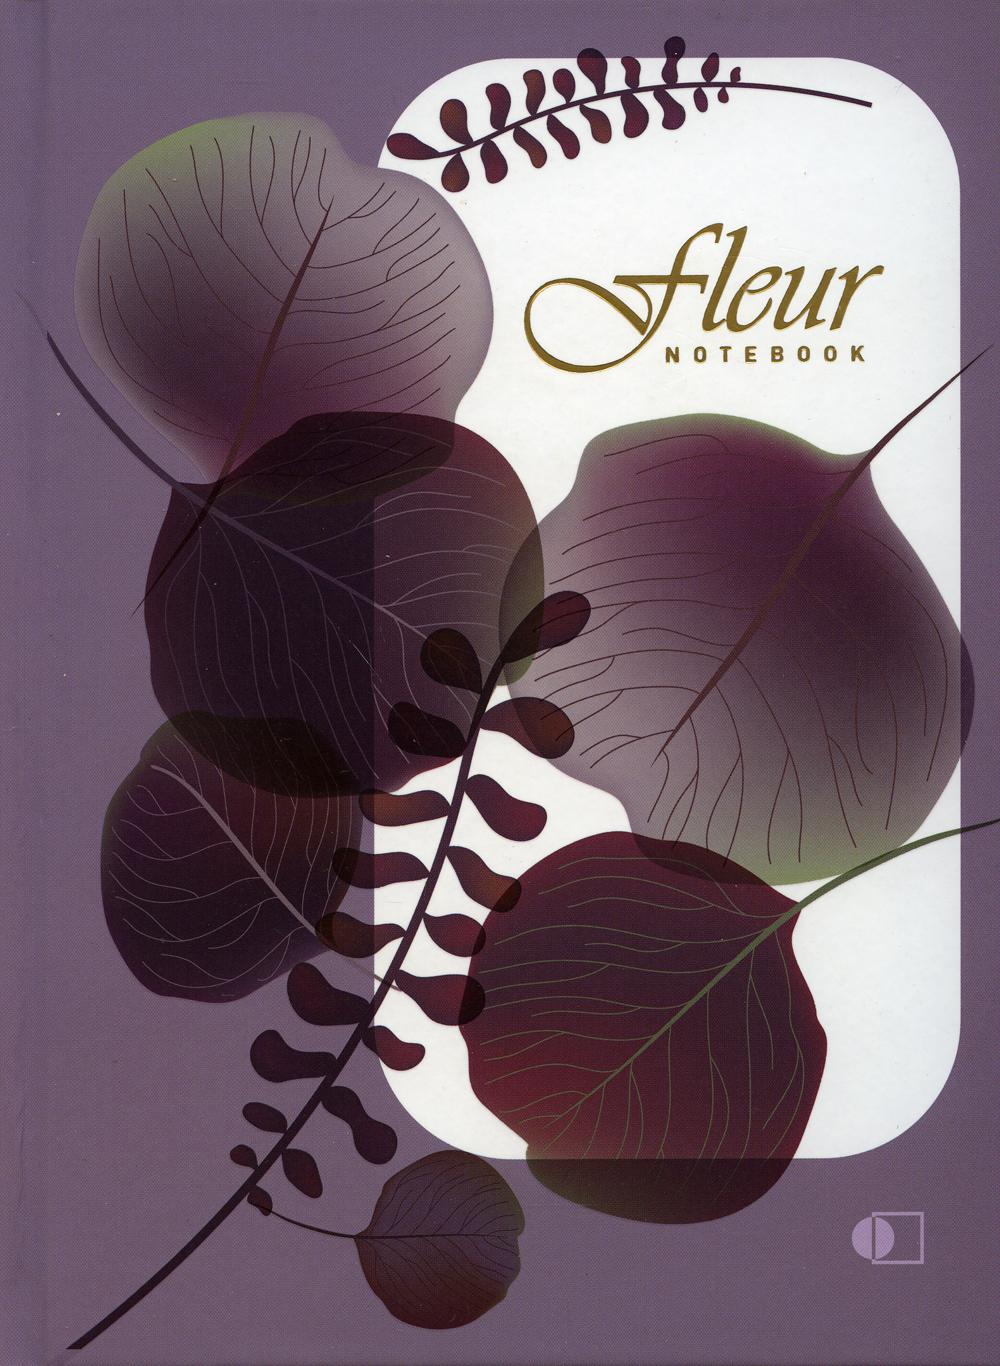 Блокнот АртПринт Цветок нежно-лиловый / Fleur, purple А5, 192 срт., клетка